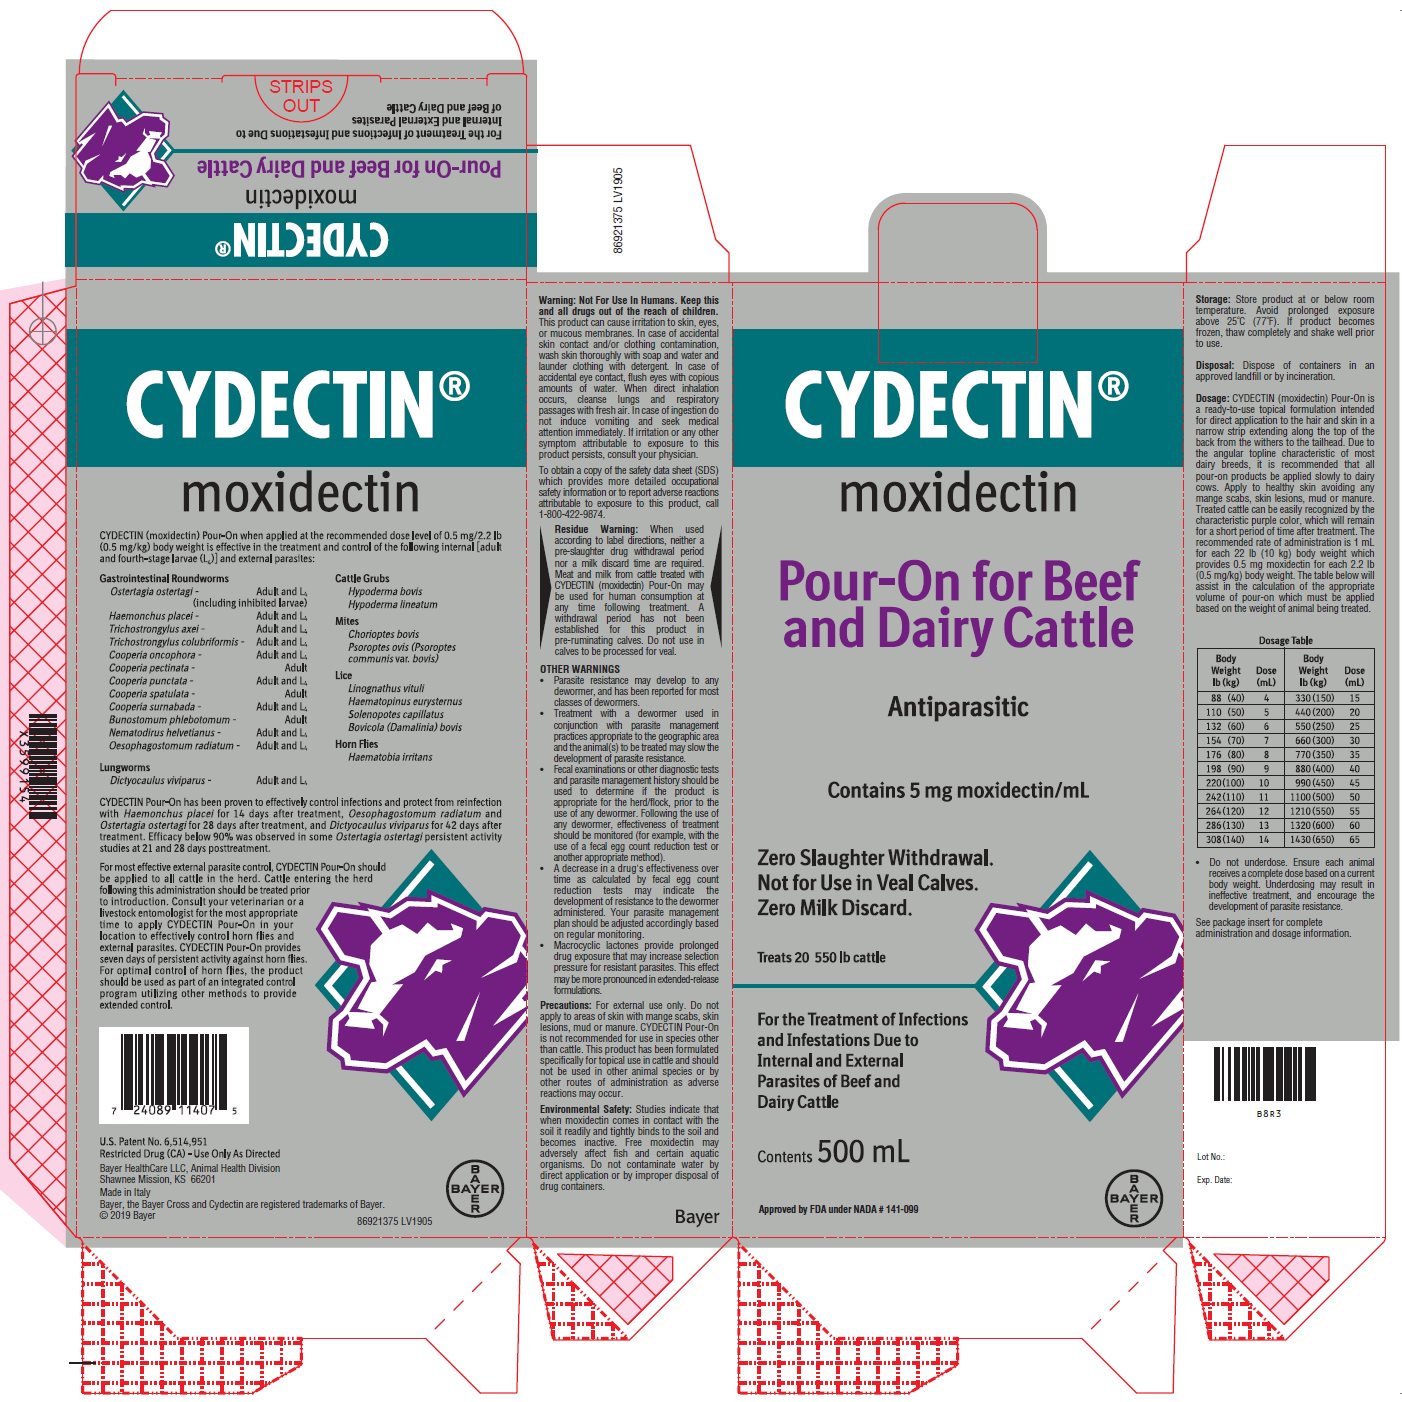 Cydectin (moxidectin) carton label